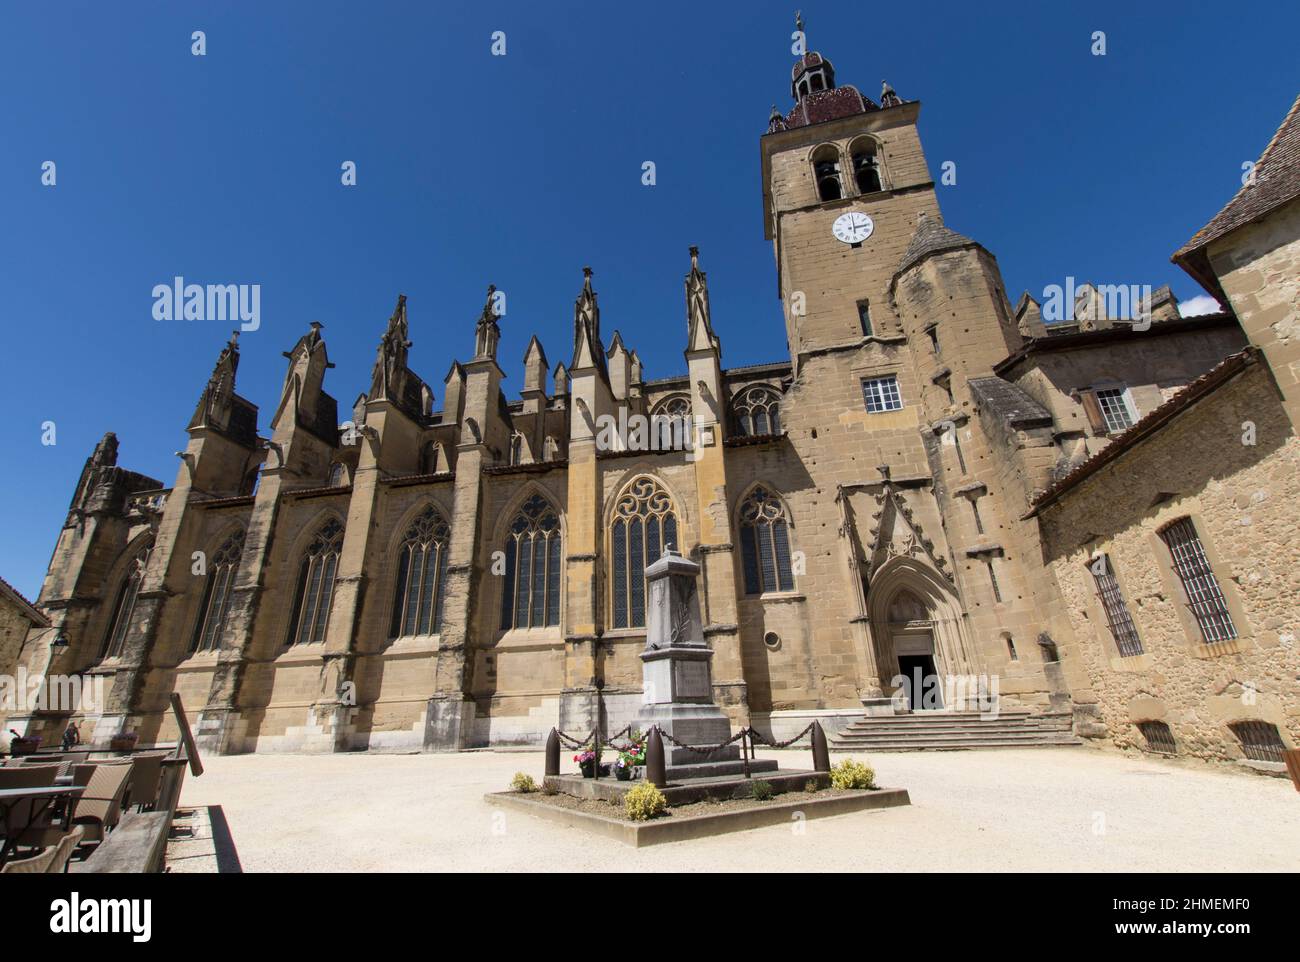 St Antoine l'abbaye,  avec ses maisons anciennes à colombages, sa halle médiévale et son abbaye fondée en 1297, Isère, France Stock Photo